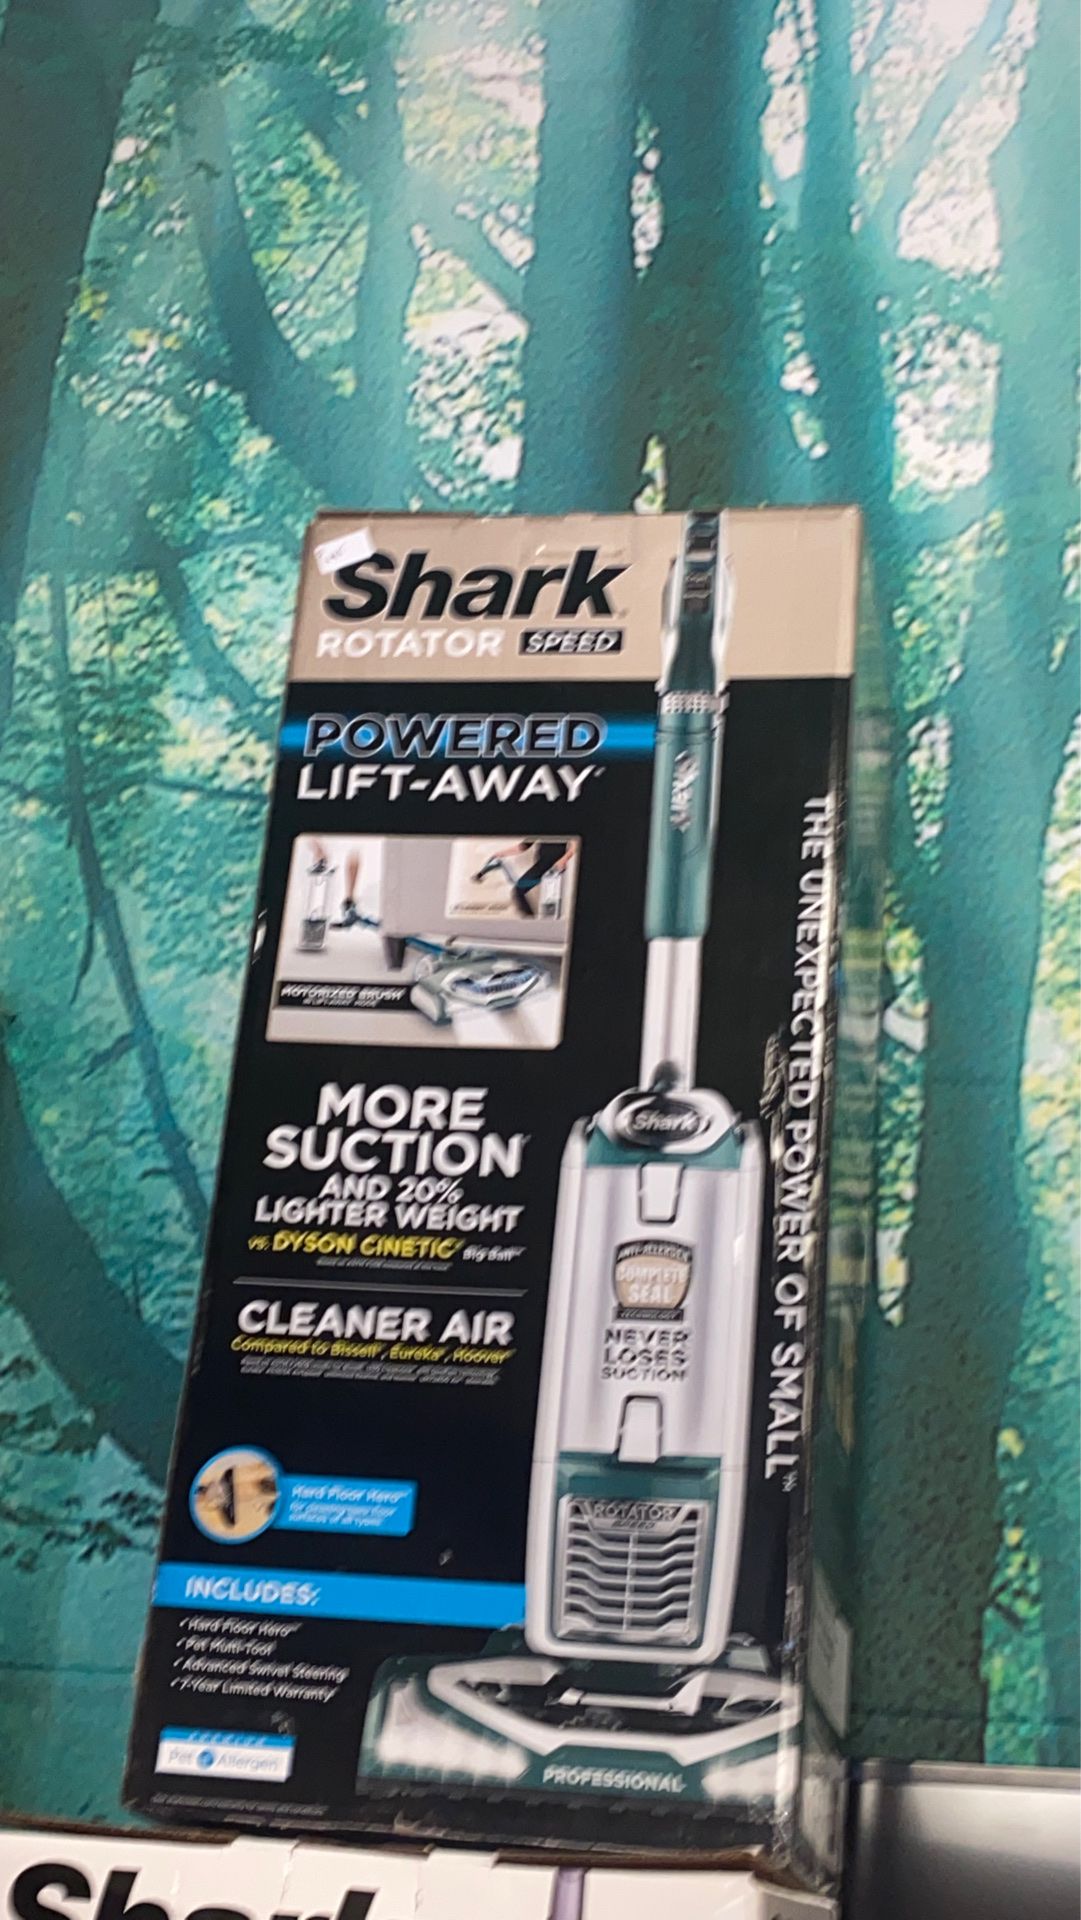 Shark Rotator Speed Powered Lift-away vacuum